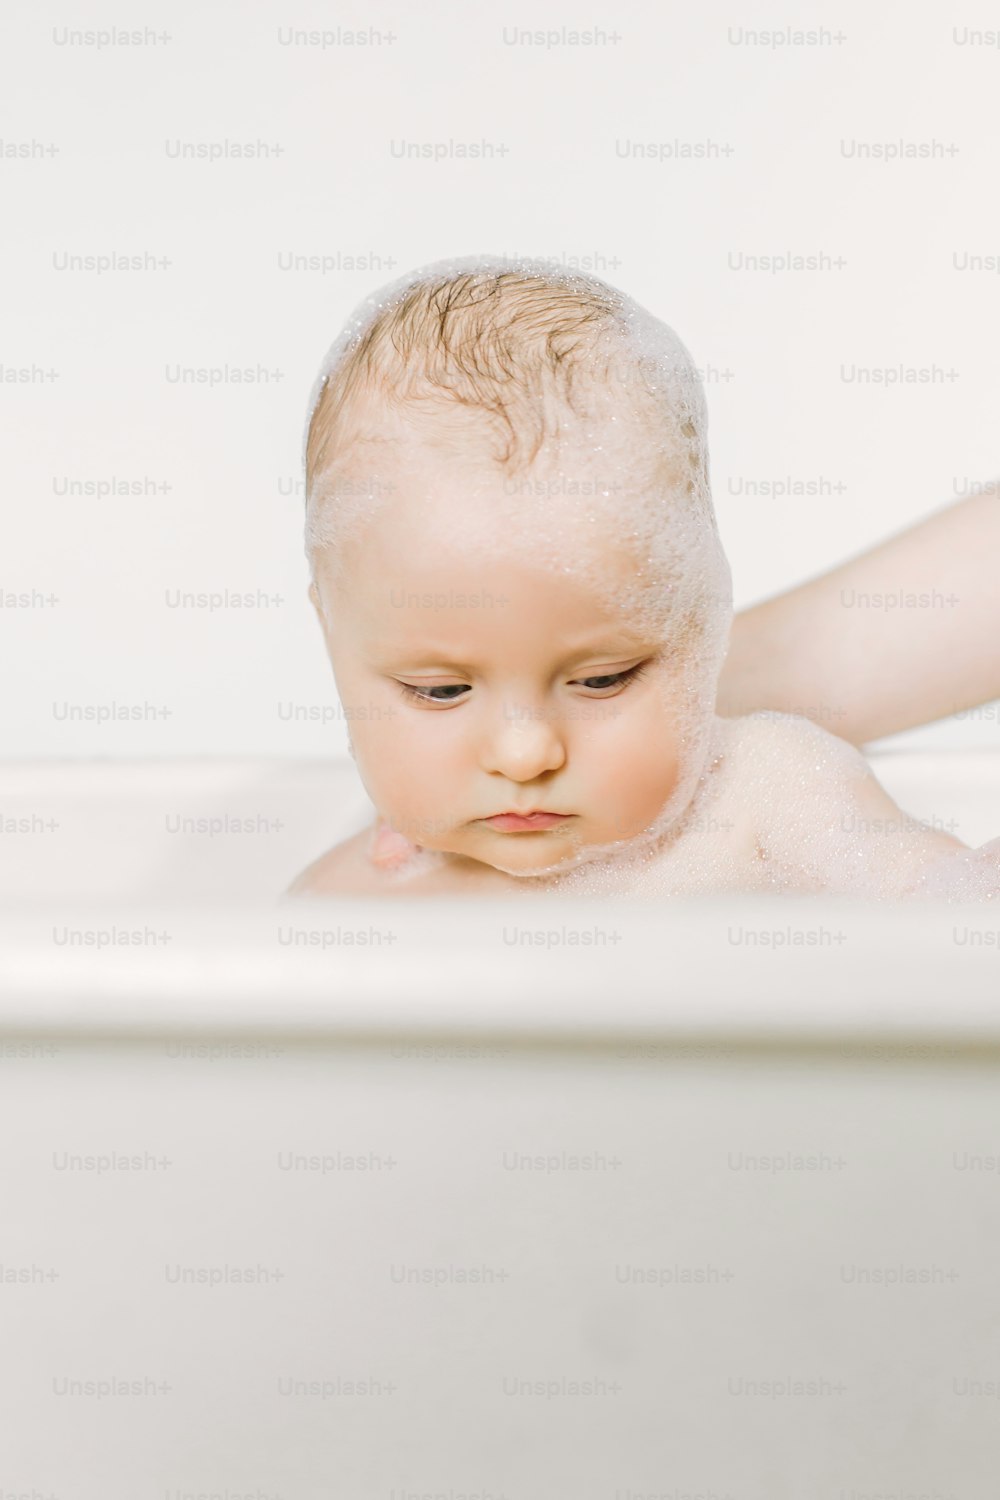 거품 거품을 가지고 노는 목욕을 하는 행복한 웃는 아기. 욕조에 있는 어린 아이. 유아 씻기 및 목욕. 어린 아이들을위한 위생 및 보살핌.